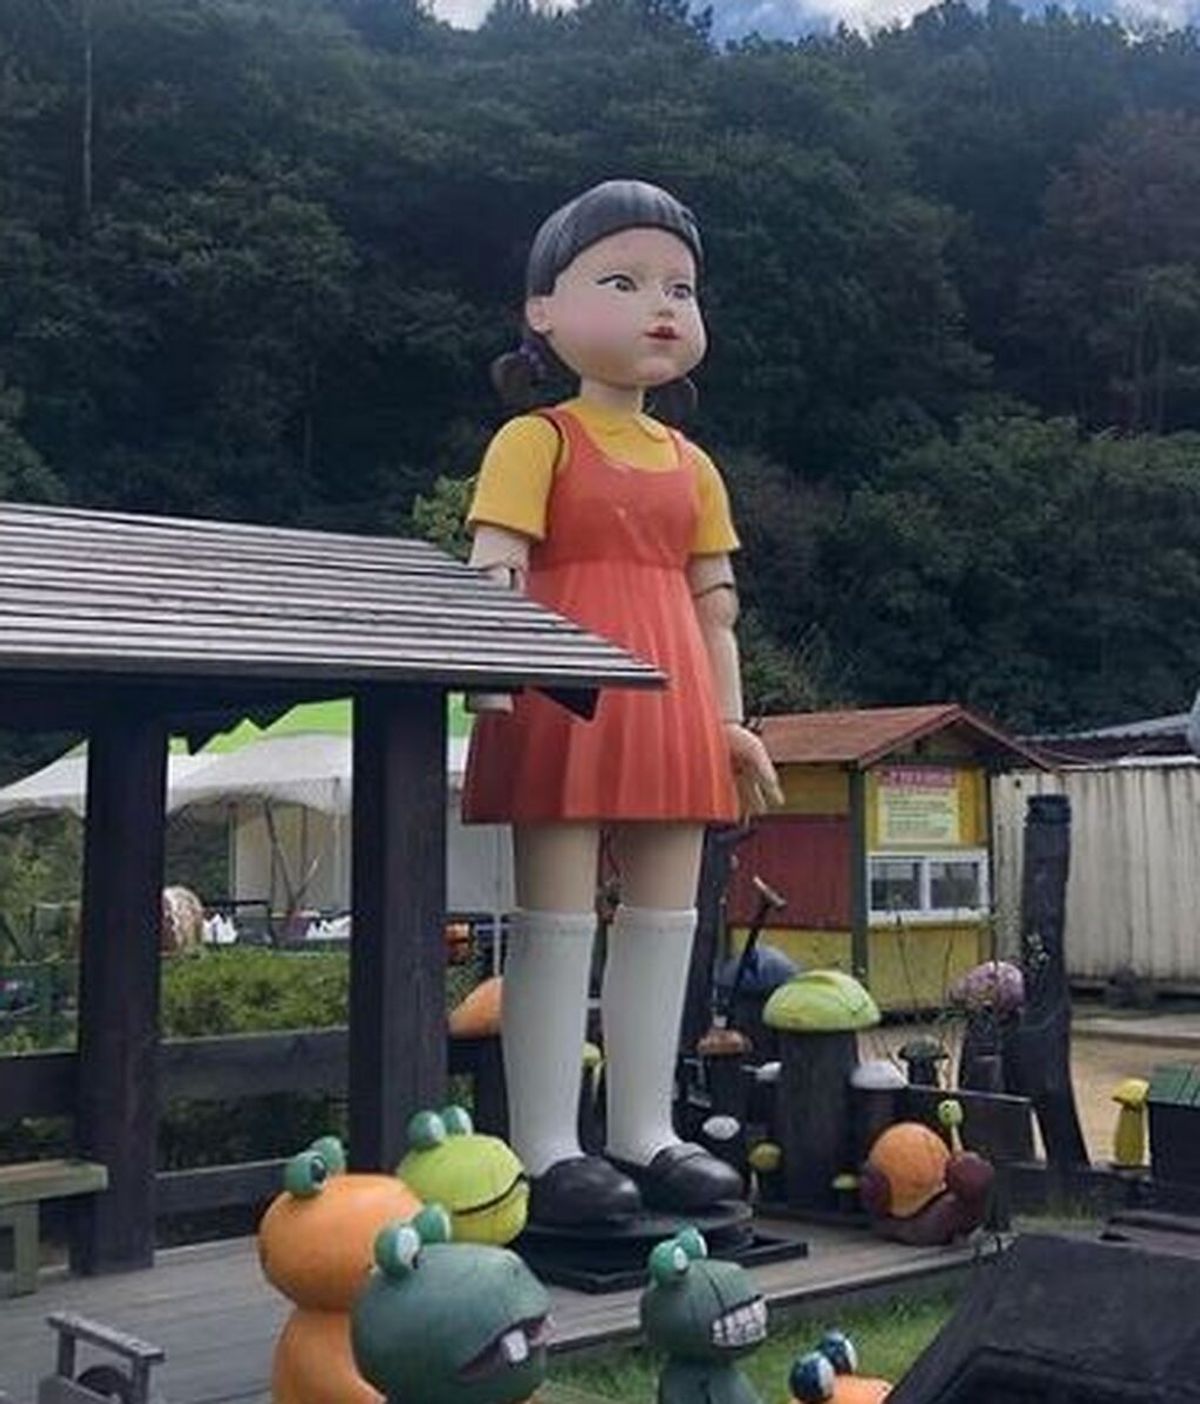 La muñeca de 'El juego del calamar' es real y puede visitarse en la entrada de un museo surcoreano